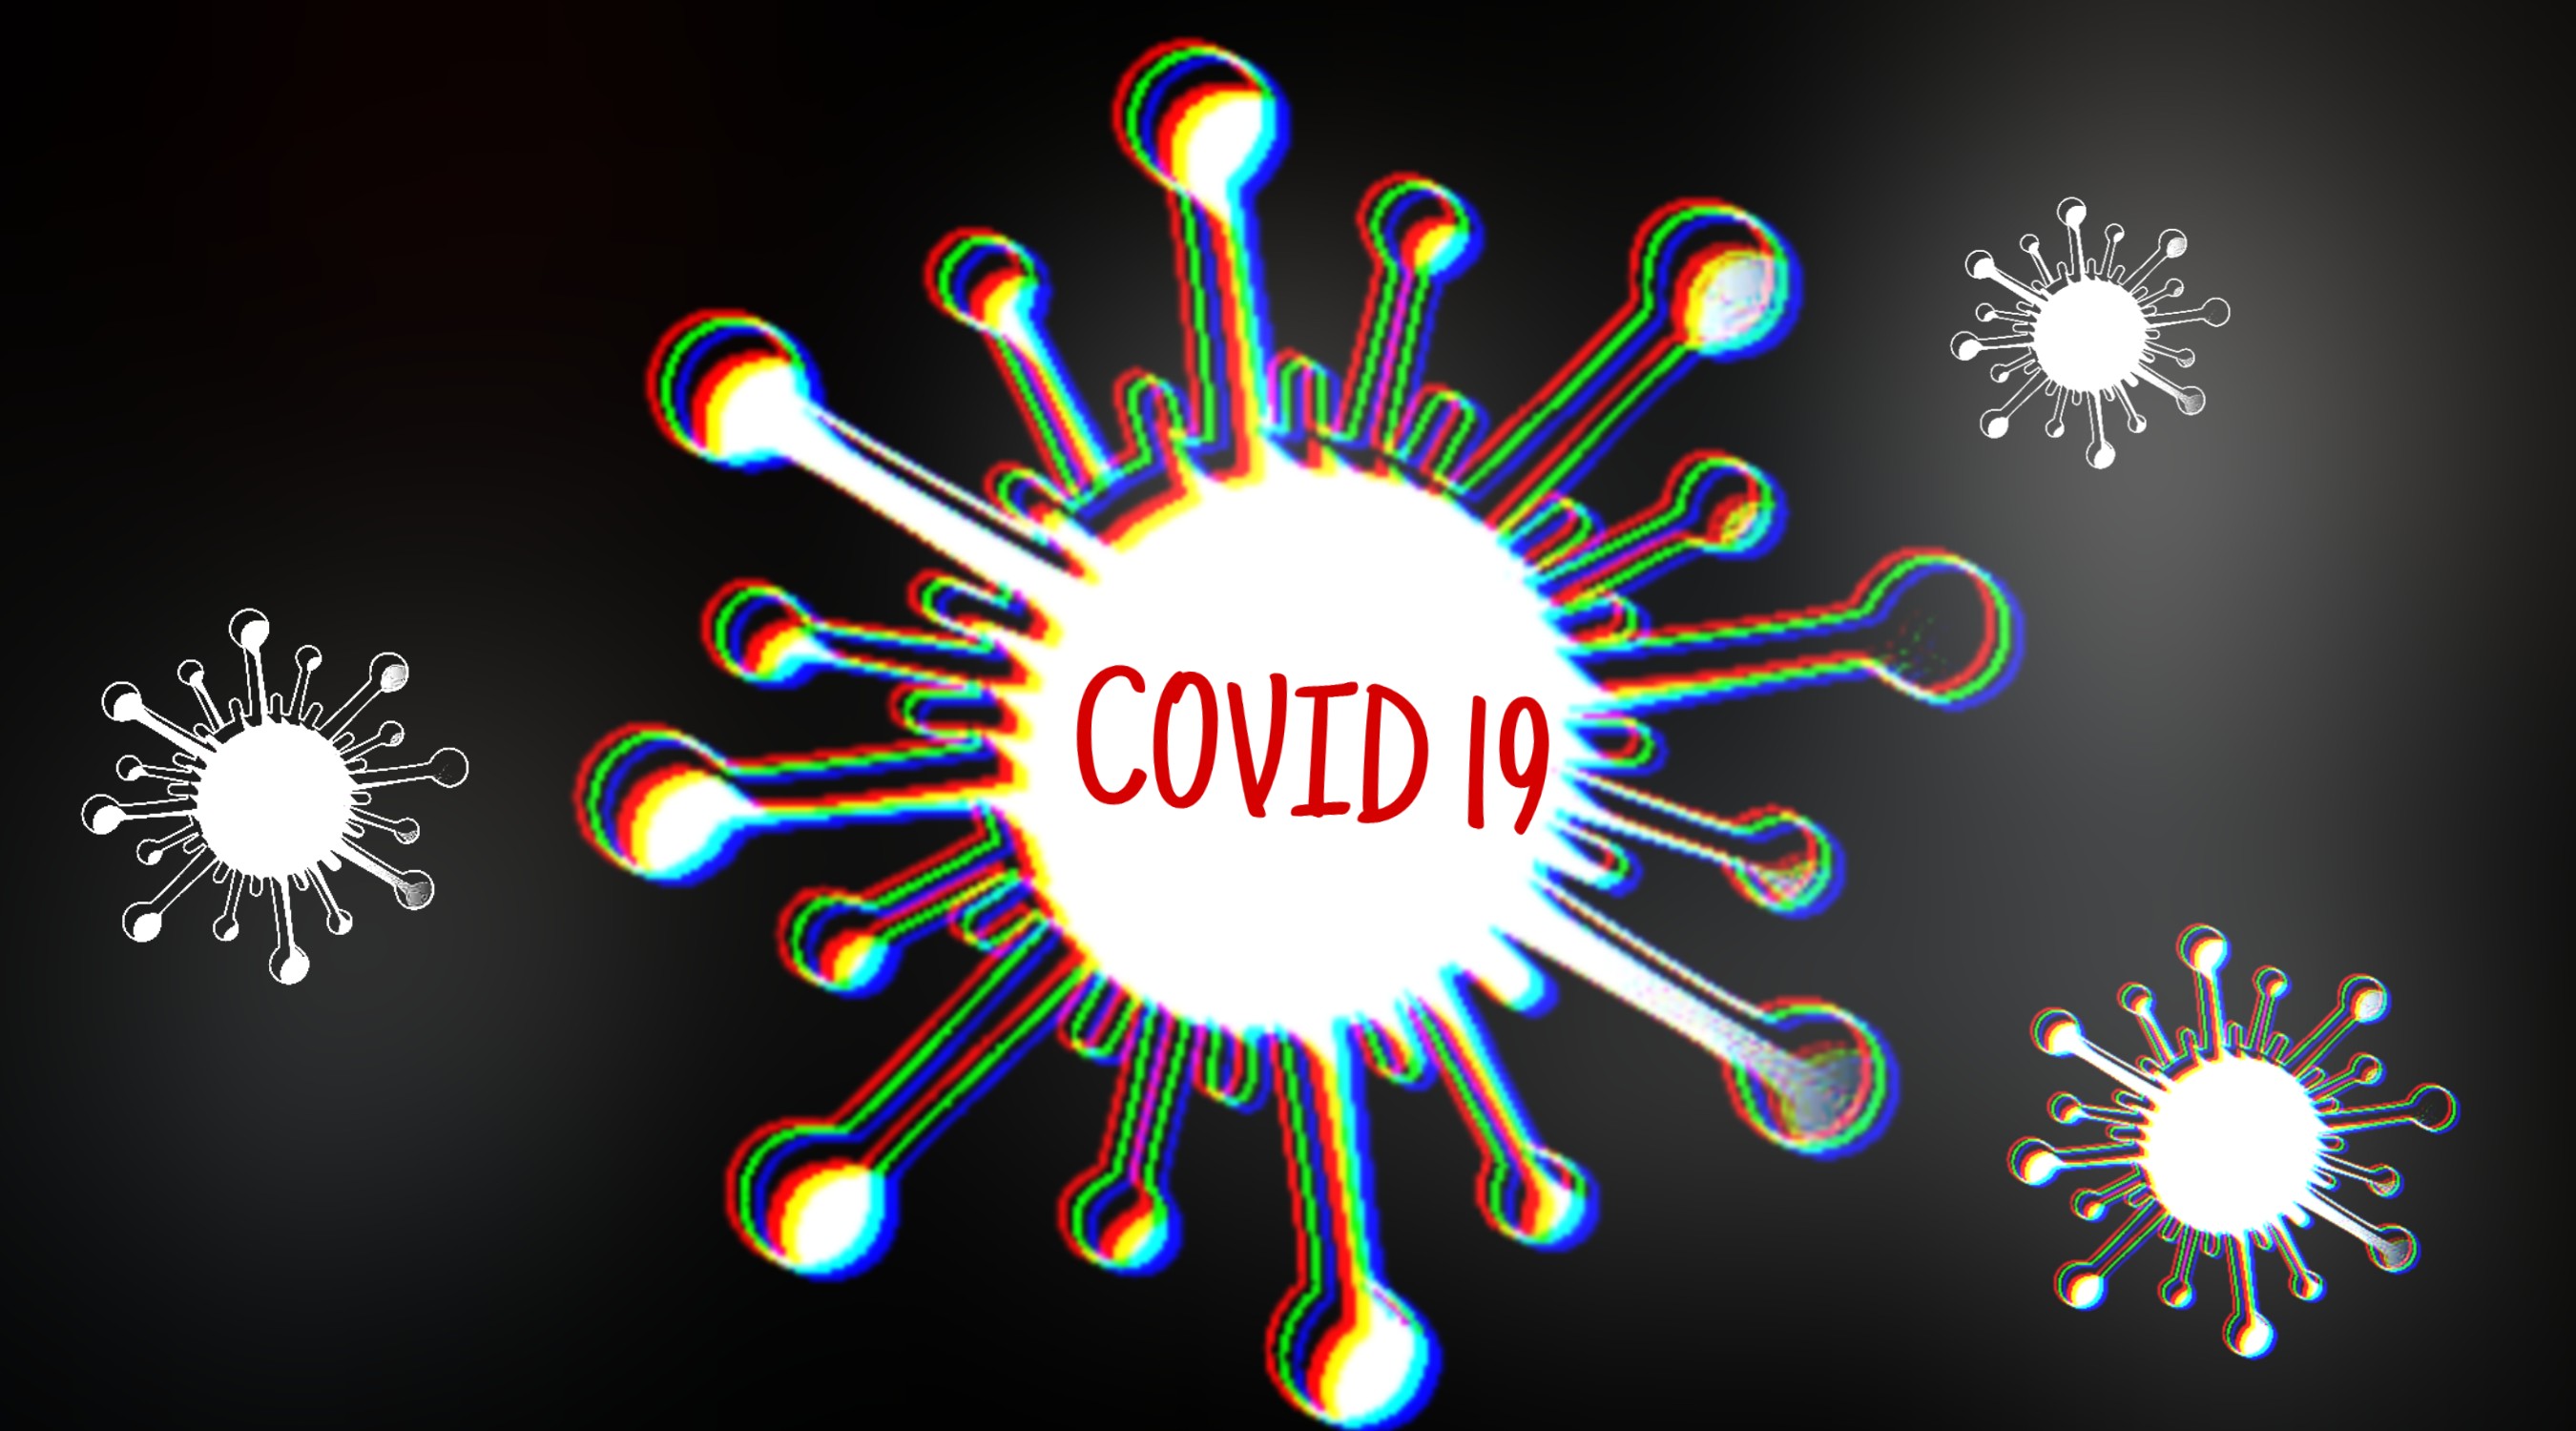 Virus penyebab Covid-19 dilaporkan telah bermutasi di beberapa negara di Asia. (Ilustrasi/Ngopibareng.id)